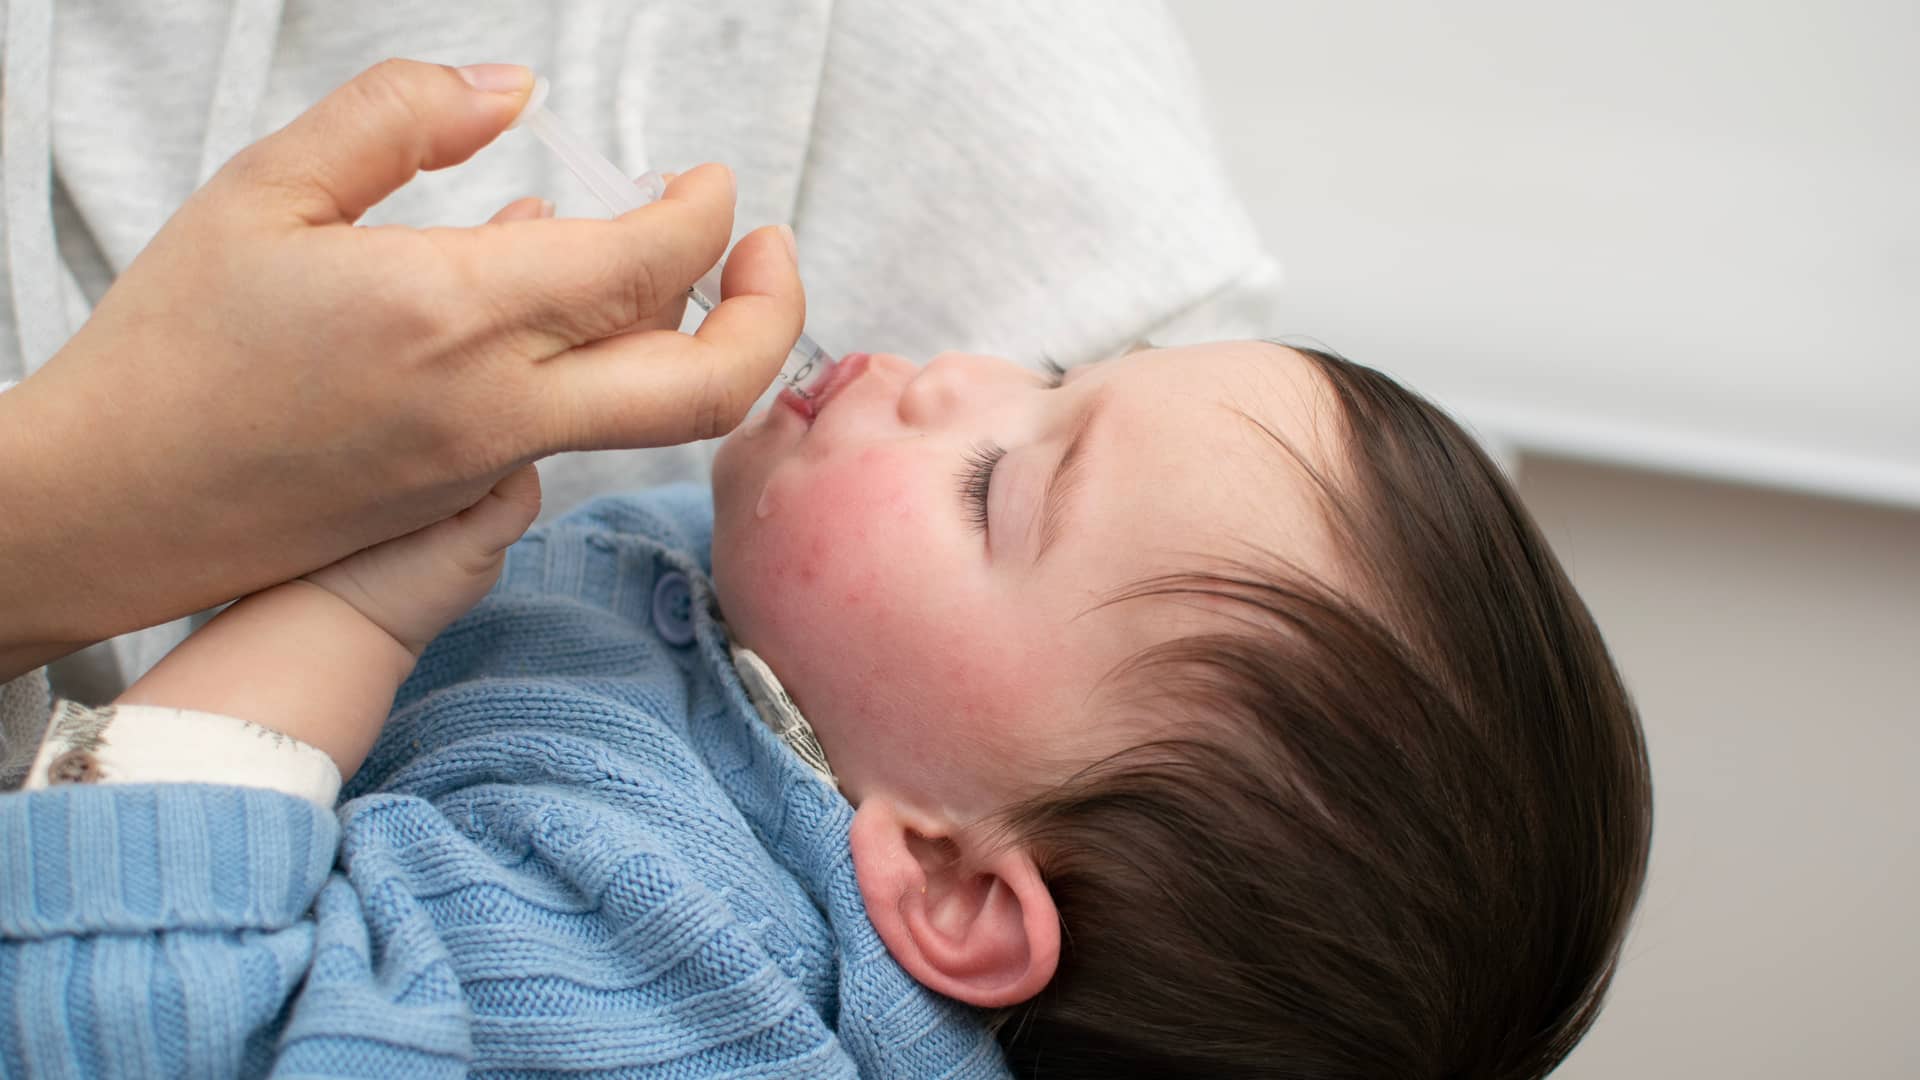 una mama dandole a su hijo un jarabe de desloratadina para acabar con la alergia de su bebe